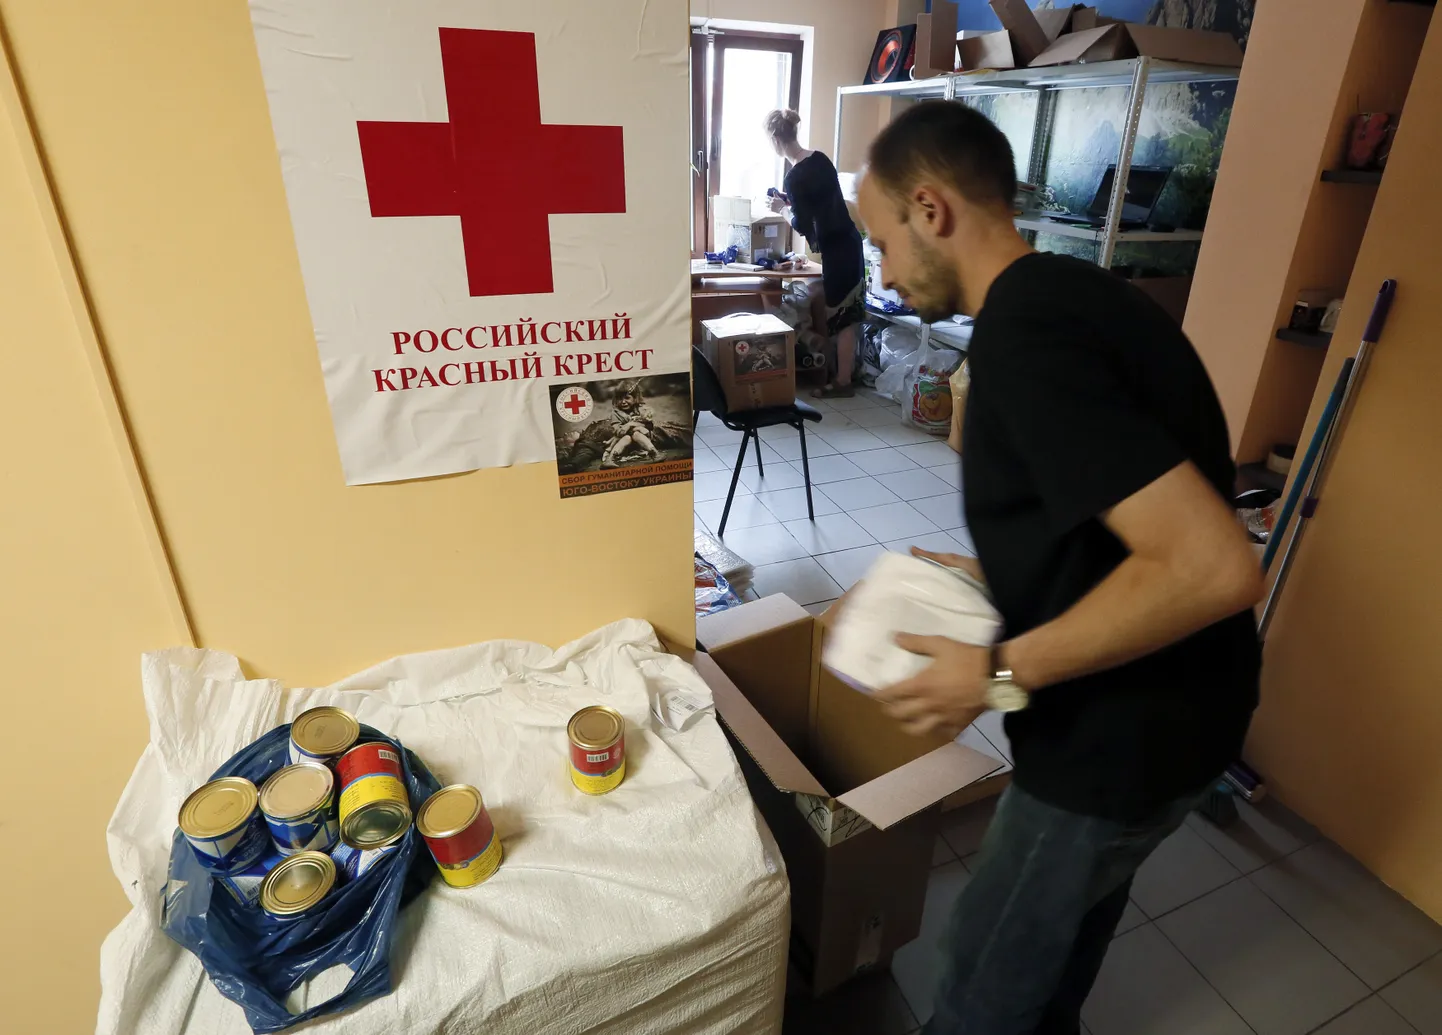 Venemaa Punase Risti kontor Krasnojarskis. Pilt on illustreeriv.